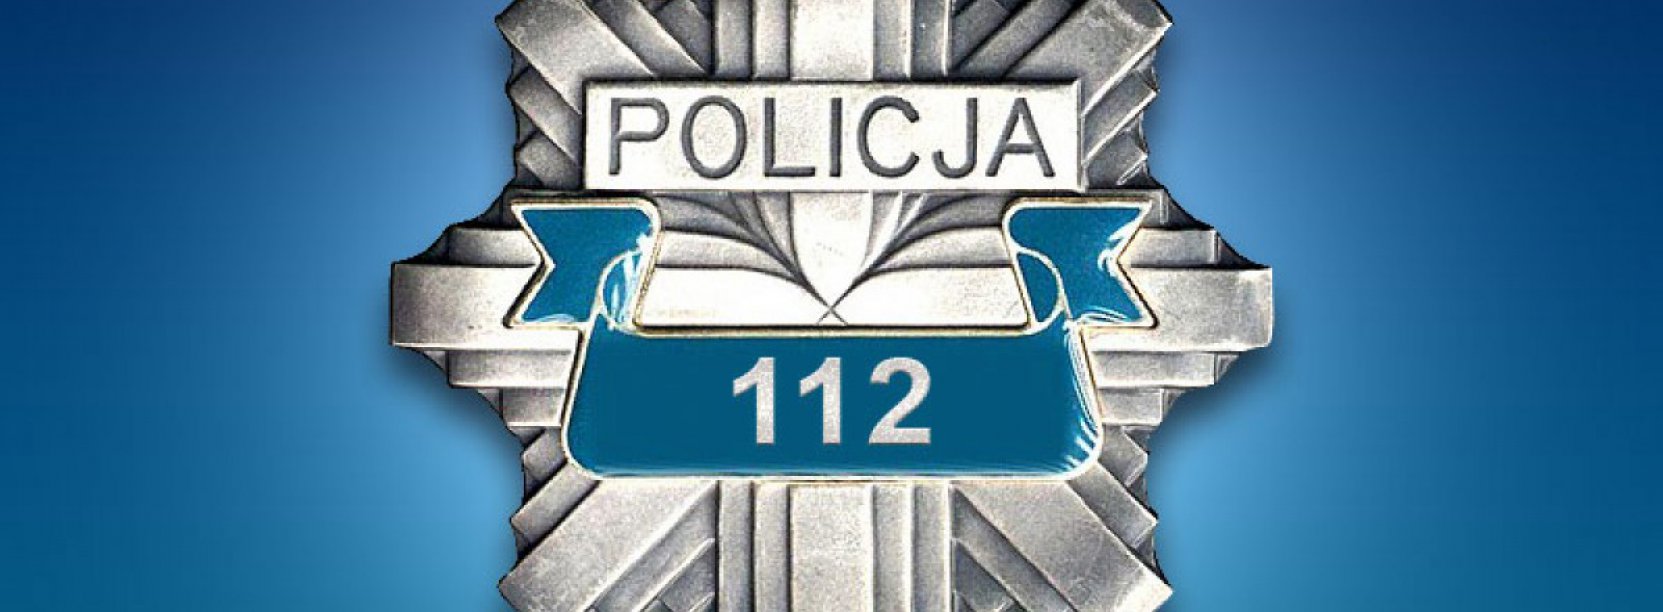 Odznaka z napisem Policja i numerem 112, na niebieskim tle